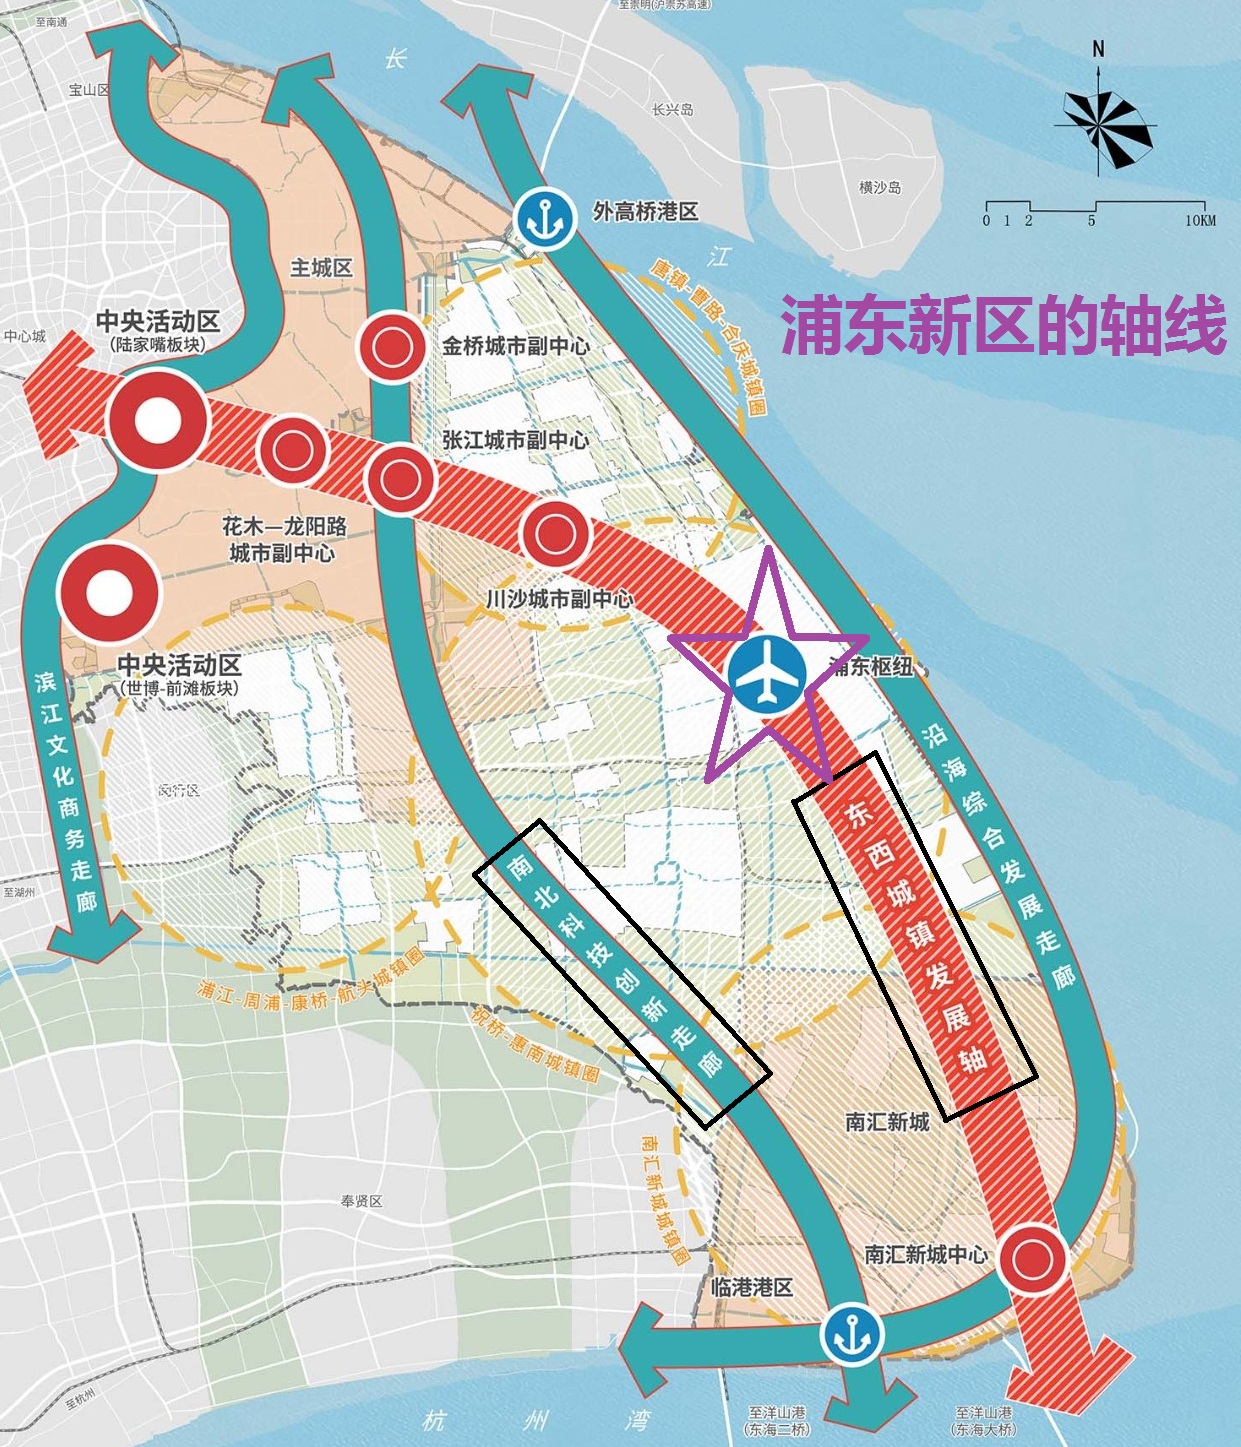 浦东新区总体规划中的东西城镇发展轴